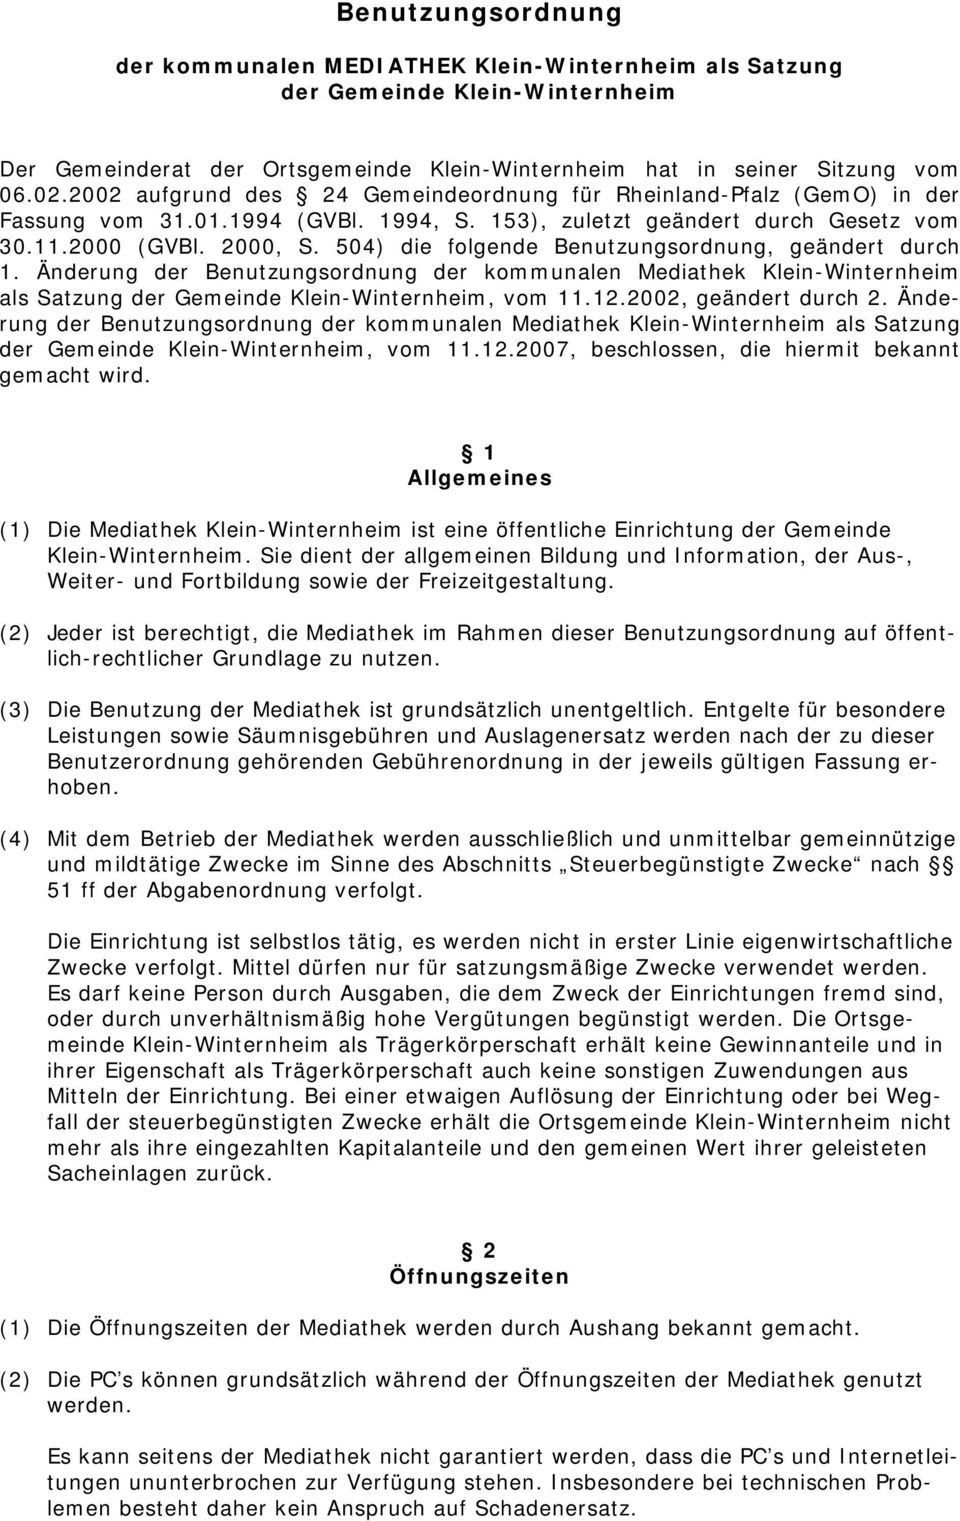 504) die folgende Benutzungsordnung, geändert durch 1. Änderung der Benutzungsordnung der kommunalen Mediathek Klein-Winternheim als Satzung der Gemeinde Klein-Winternheim, vom 11.12.